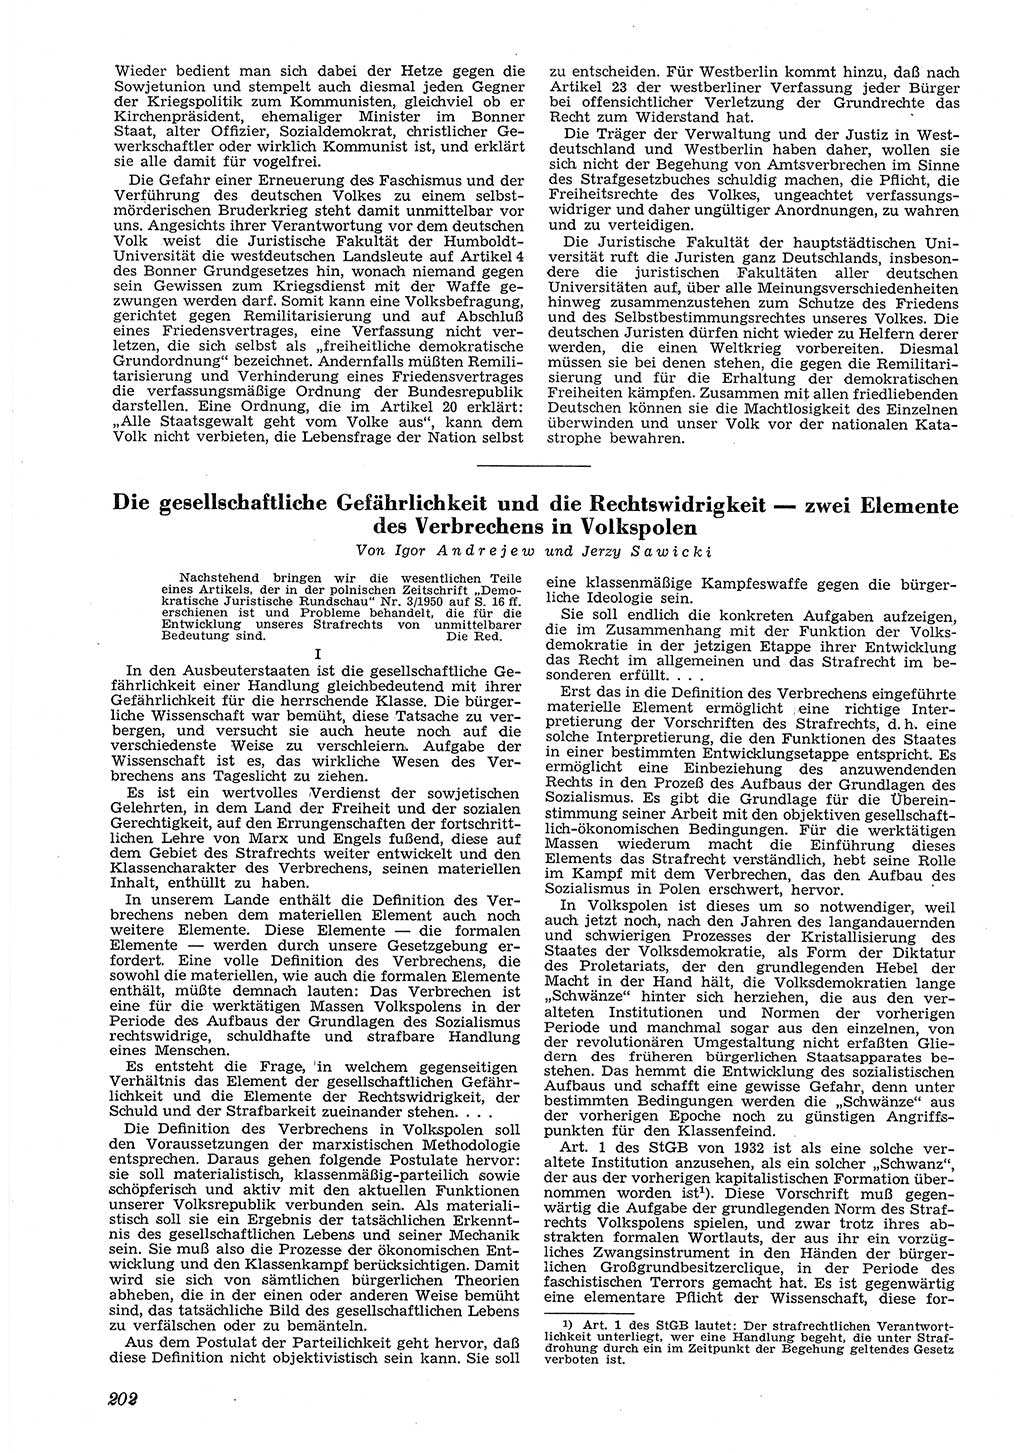 Neue Justiz (NJ), Zeitschrift für Recht und Rechtswissenschaft [Deutsche Demokratische Republik (DDR)], 5. Jahrgang 1951, Seite 202 (NJ DDR 1951, S. 202)